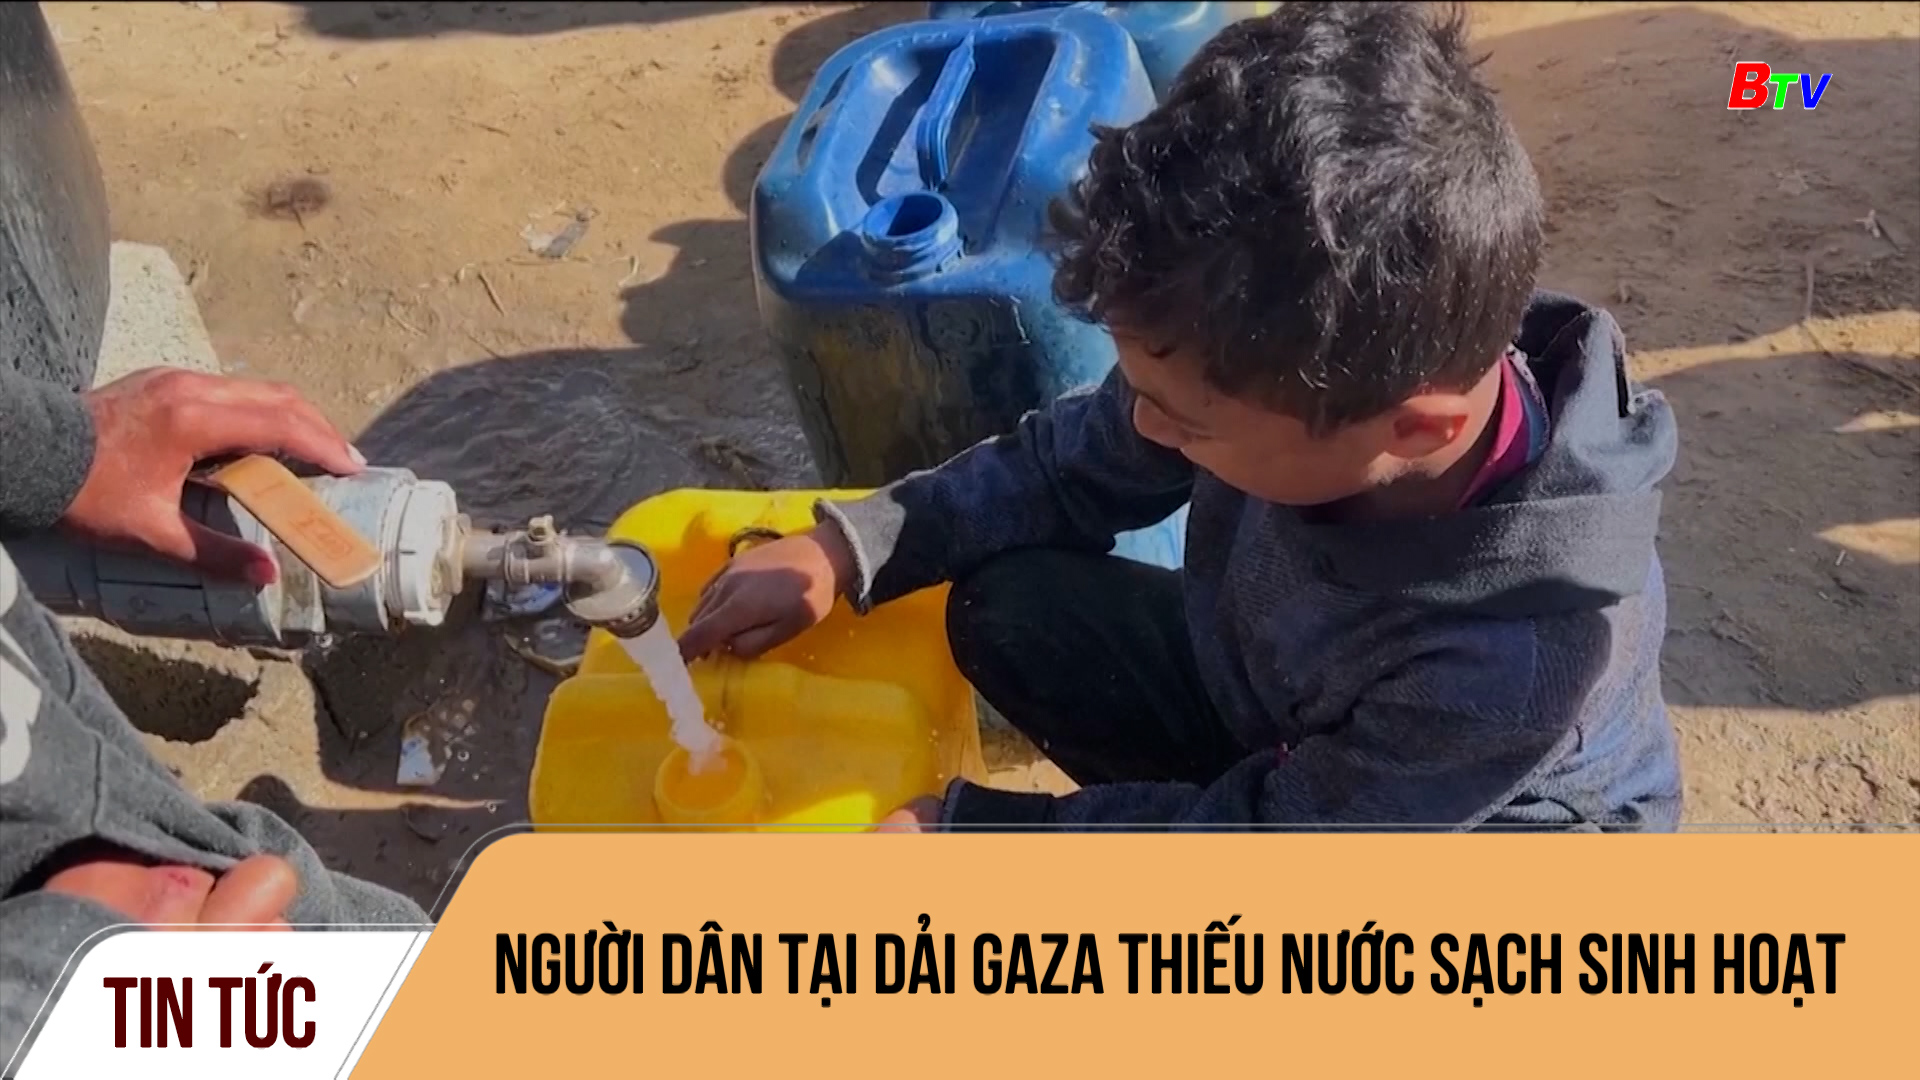 Người dân tại dải Gaza thiếu nước sạch sinh hoạt